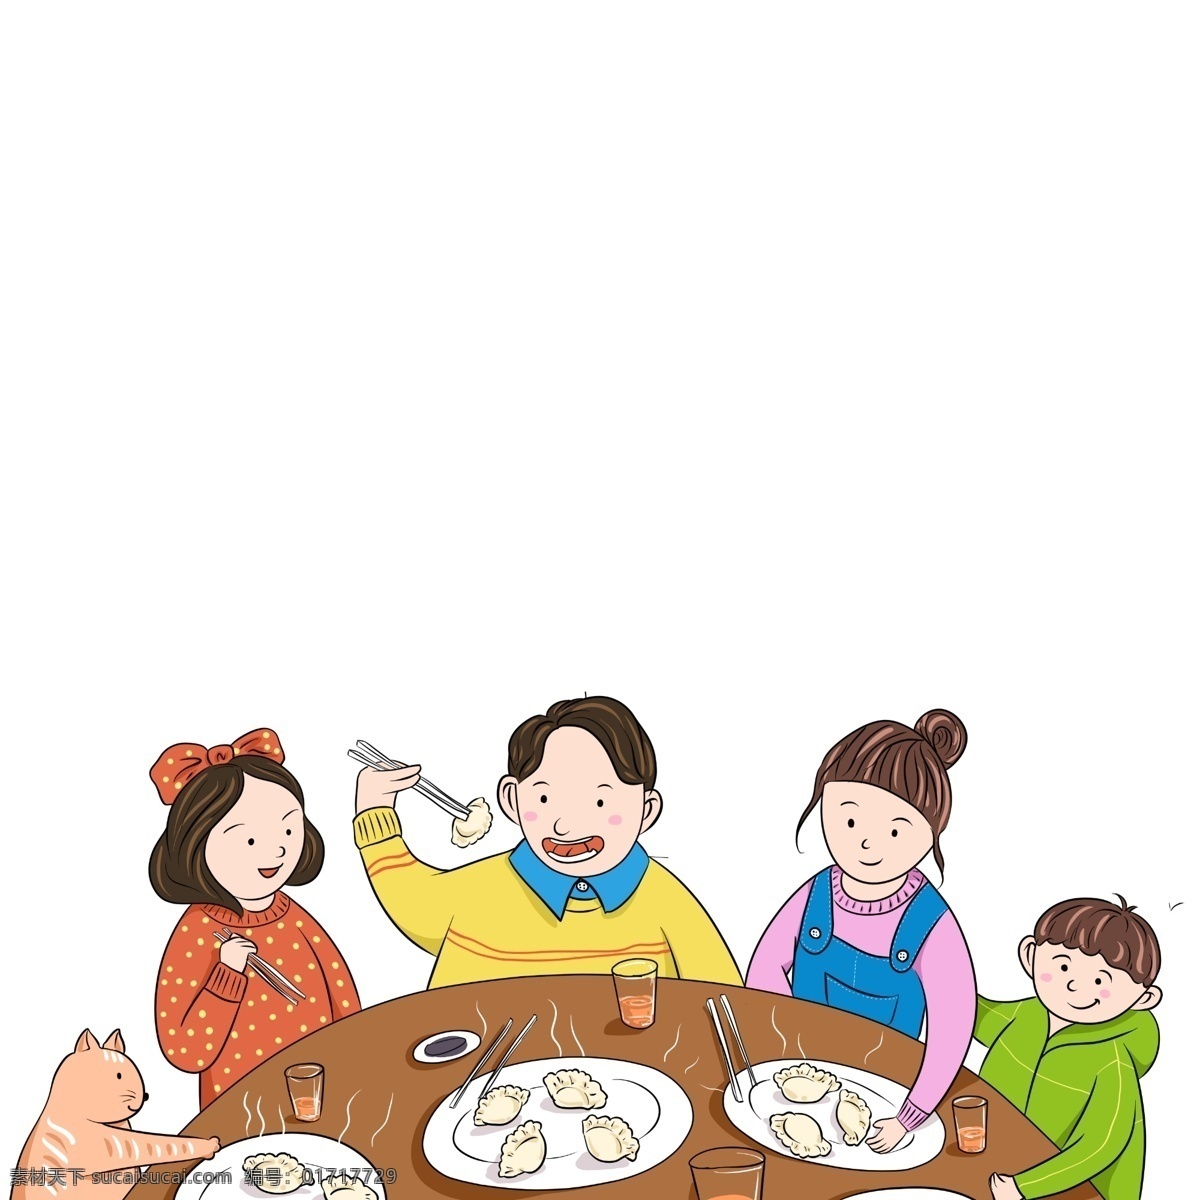 卡通 手绘 全家 吃 年夜饭 春节 冬至 饺子 吃饺子 水饺 冬至吃饺子 春节年夜饭 全家人 家人 团聚 聚餐 热闹